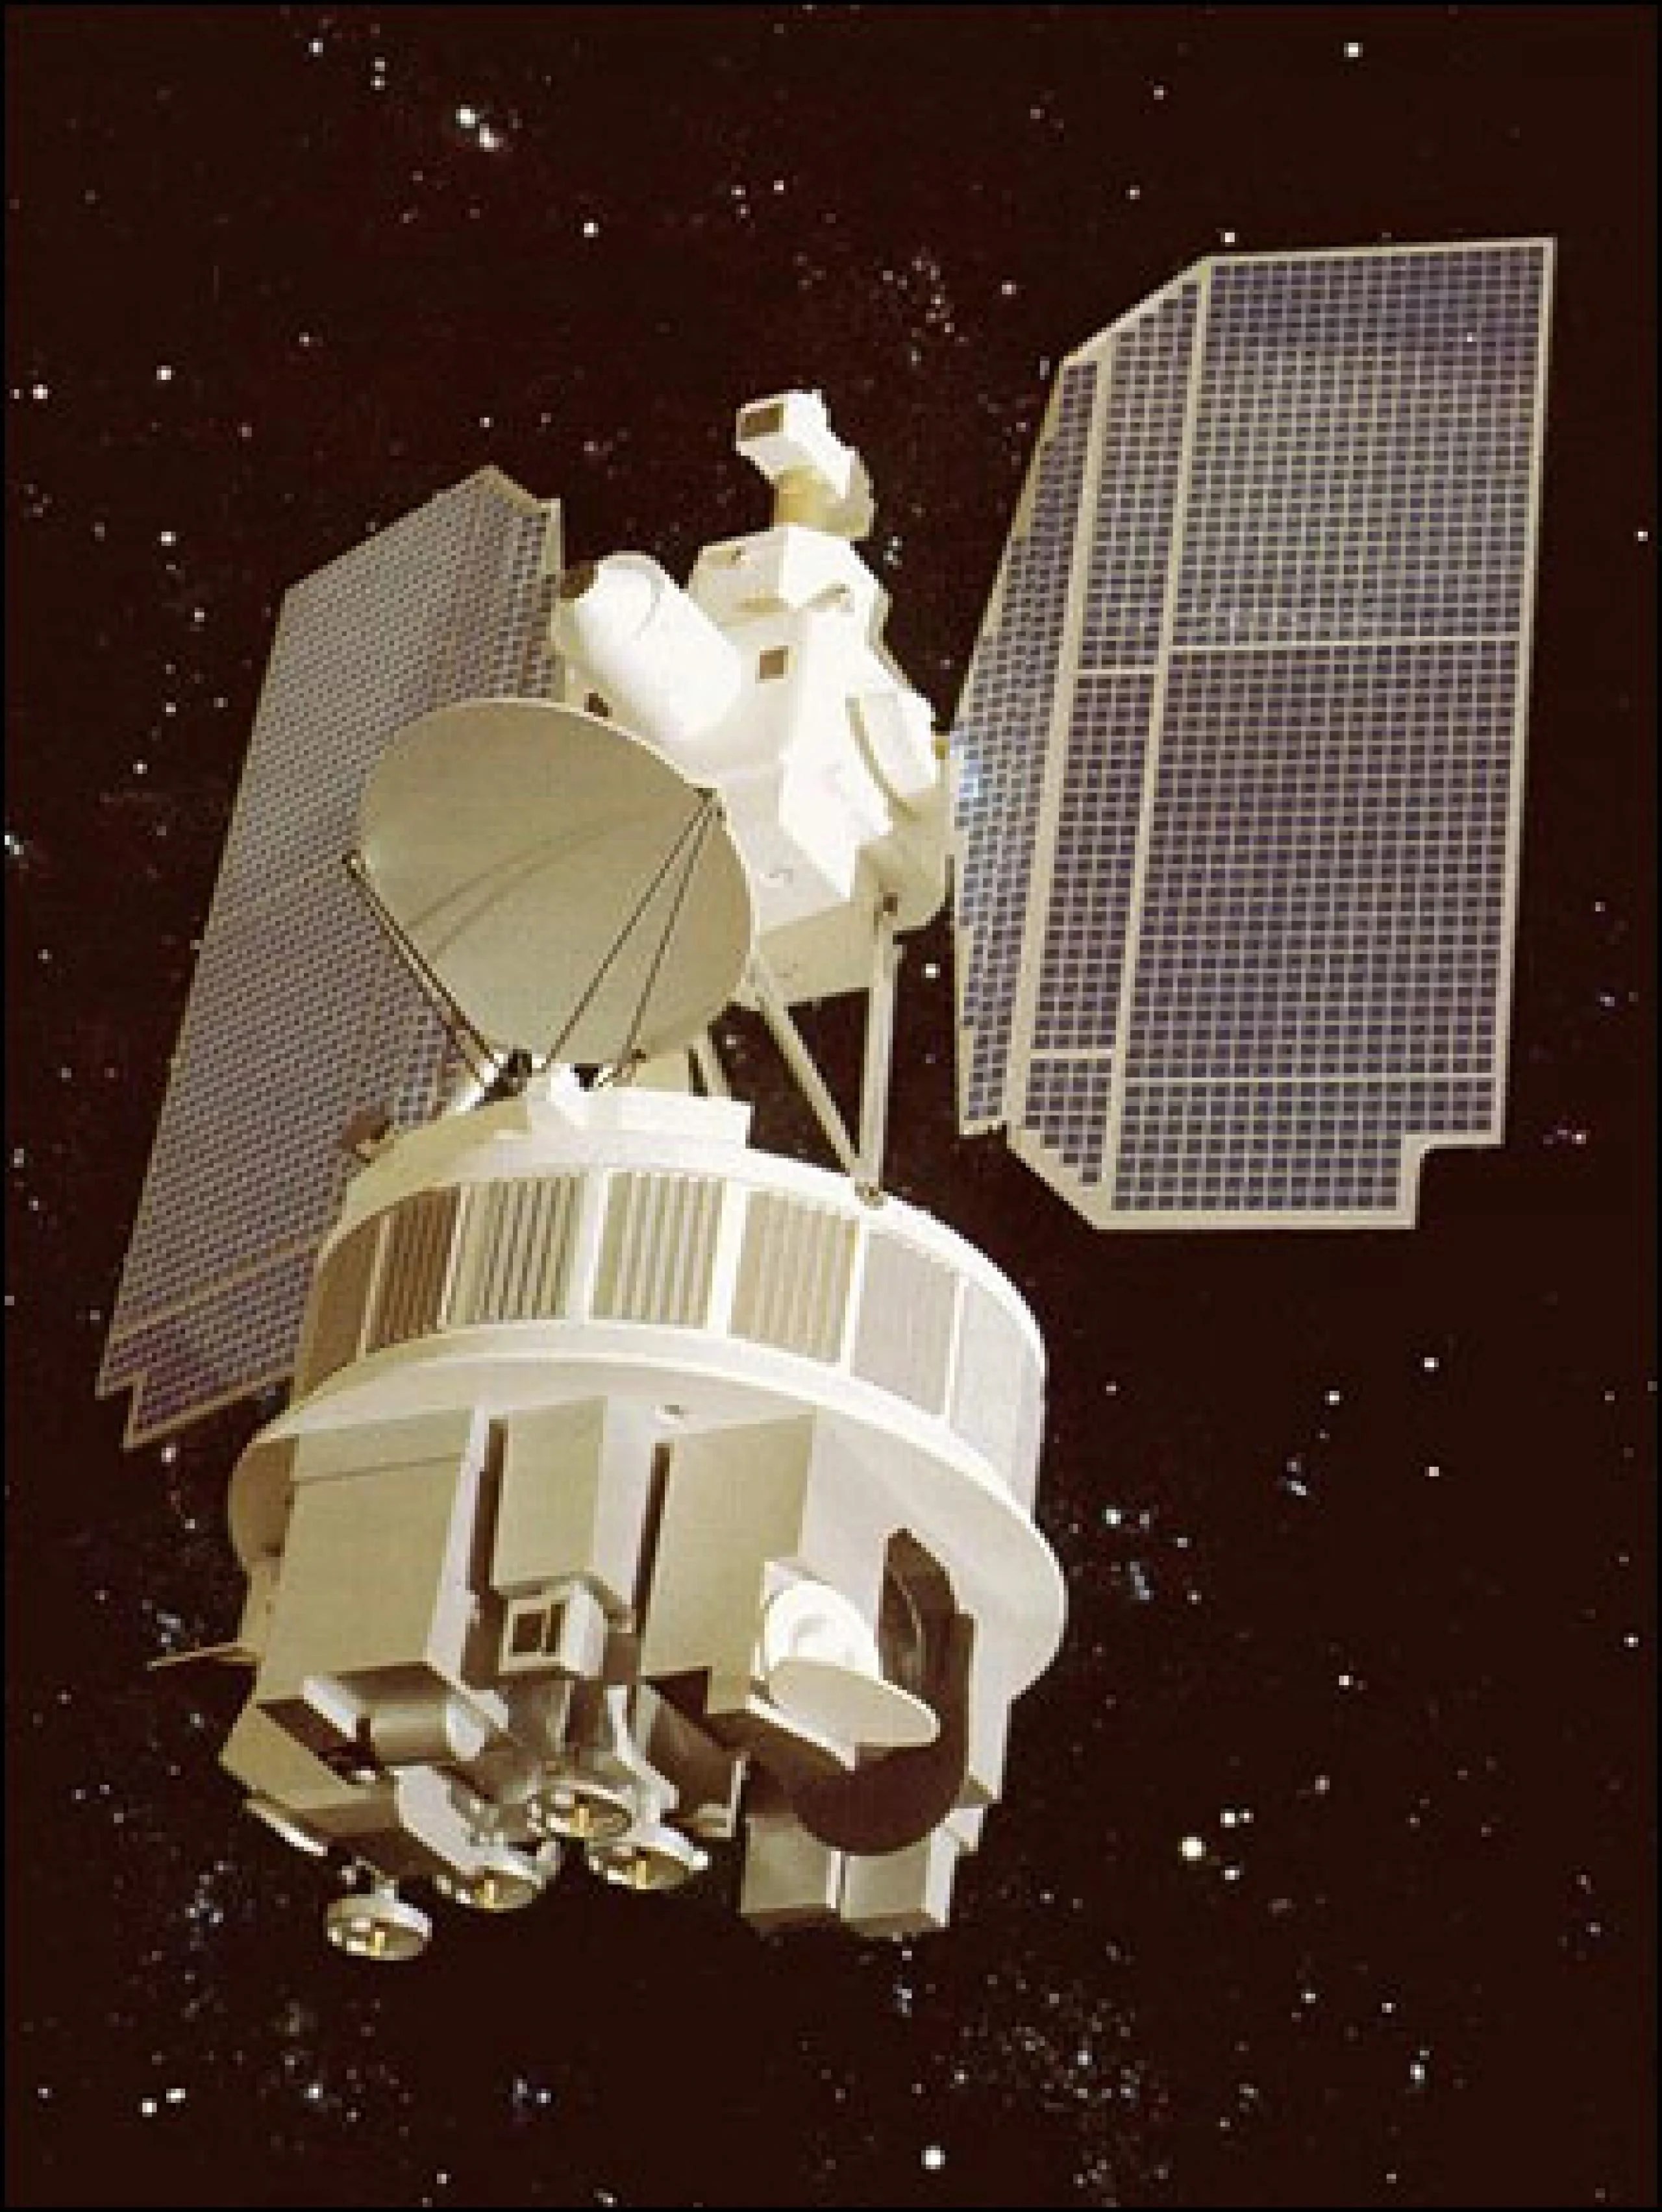 A partir de 1964 y durante los siguientes 20 años, la serie de misiones Nimbus fue la principal plataforma de investigación y desarrollo de EE.UU. para la teledetección de la Tierra por satélite. Siete satélites Nimbus se lanzaron a lo largo de catorce años. Cada misión enseñó a los científicos no solo algo nuevo sobre el sistema terrestre, sino también sobre cómo crear, operar y mejorar la tecnología para observar la Tierra desde el espacio. La imagen es un dibujo artístico del diseño general de la serie N